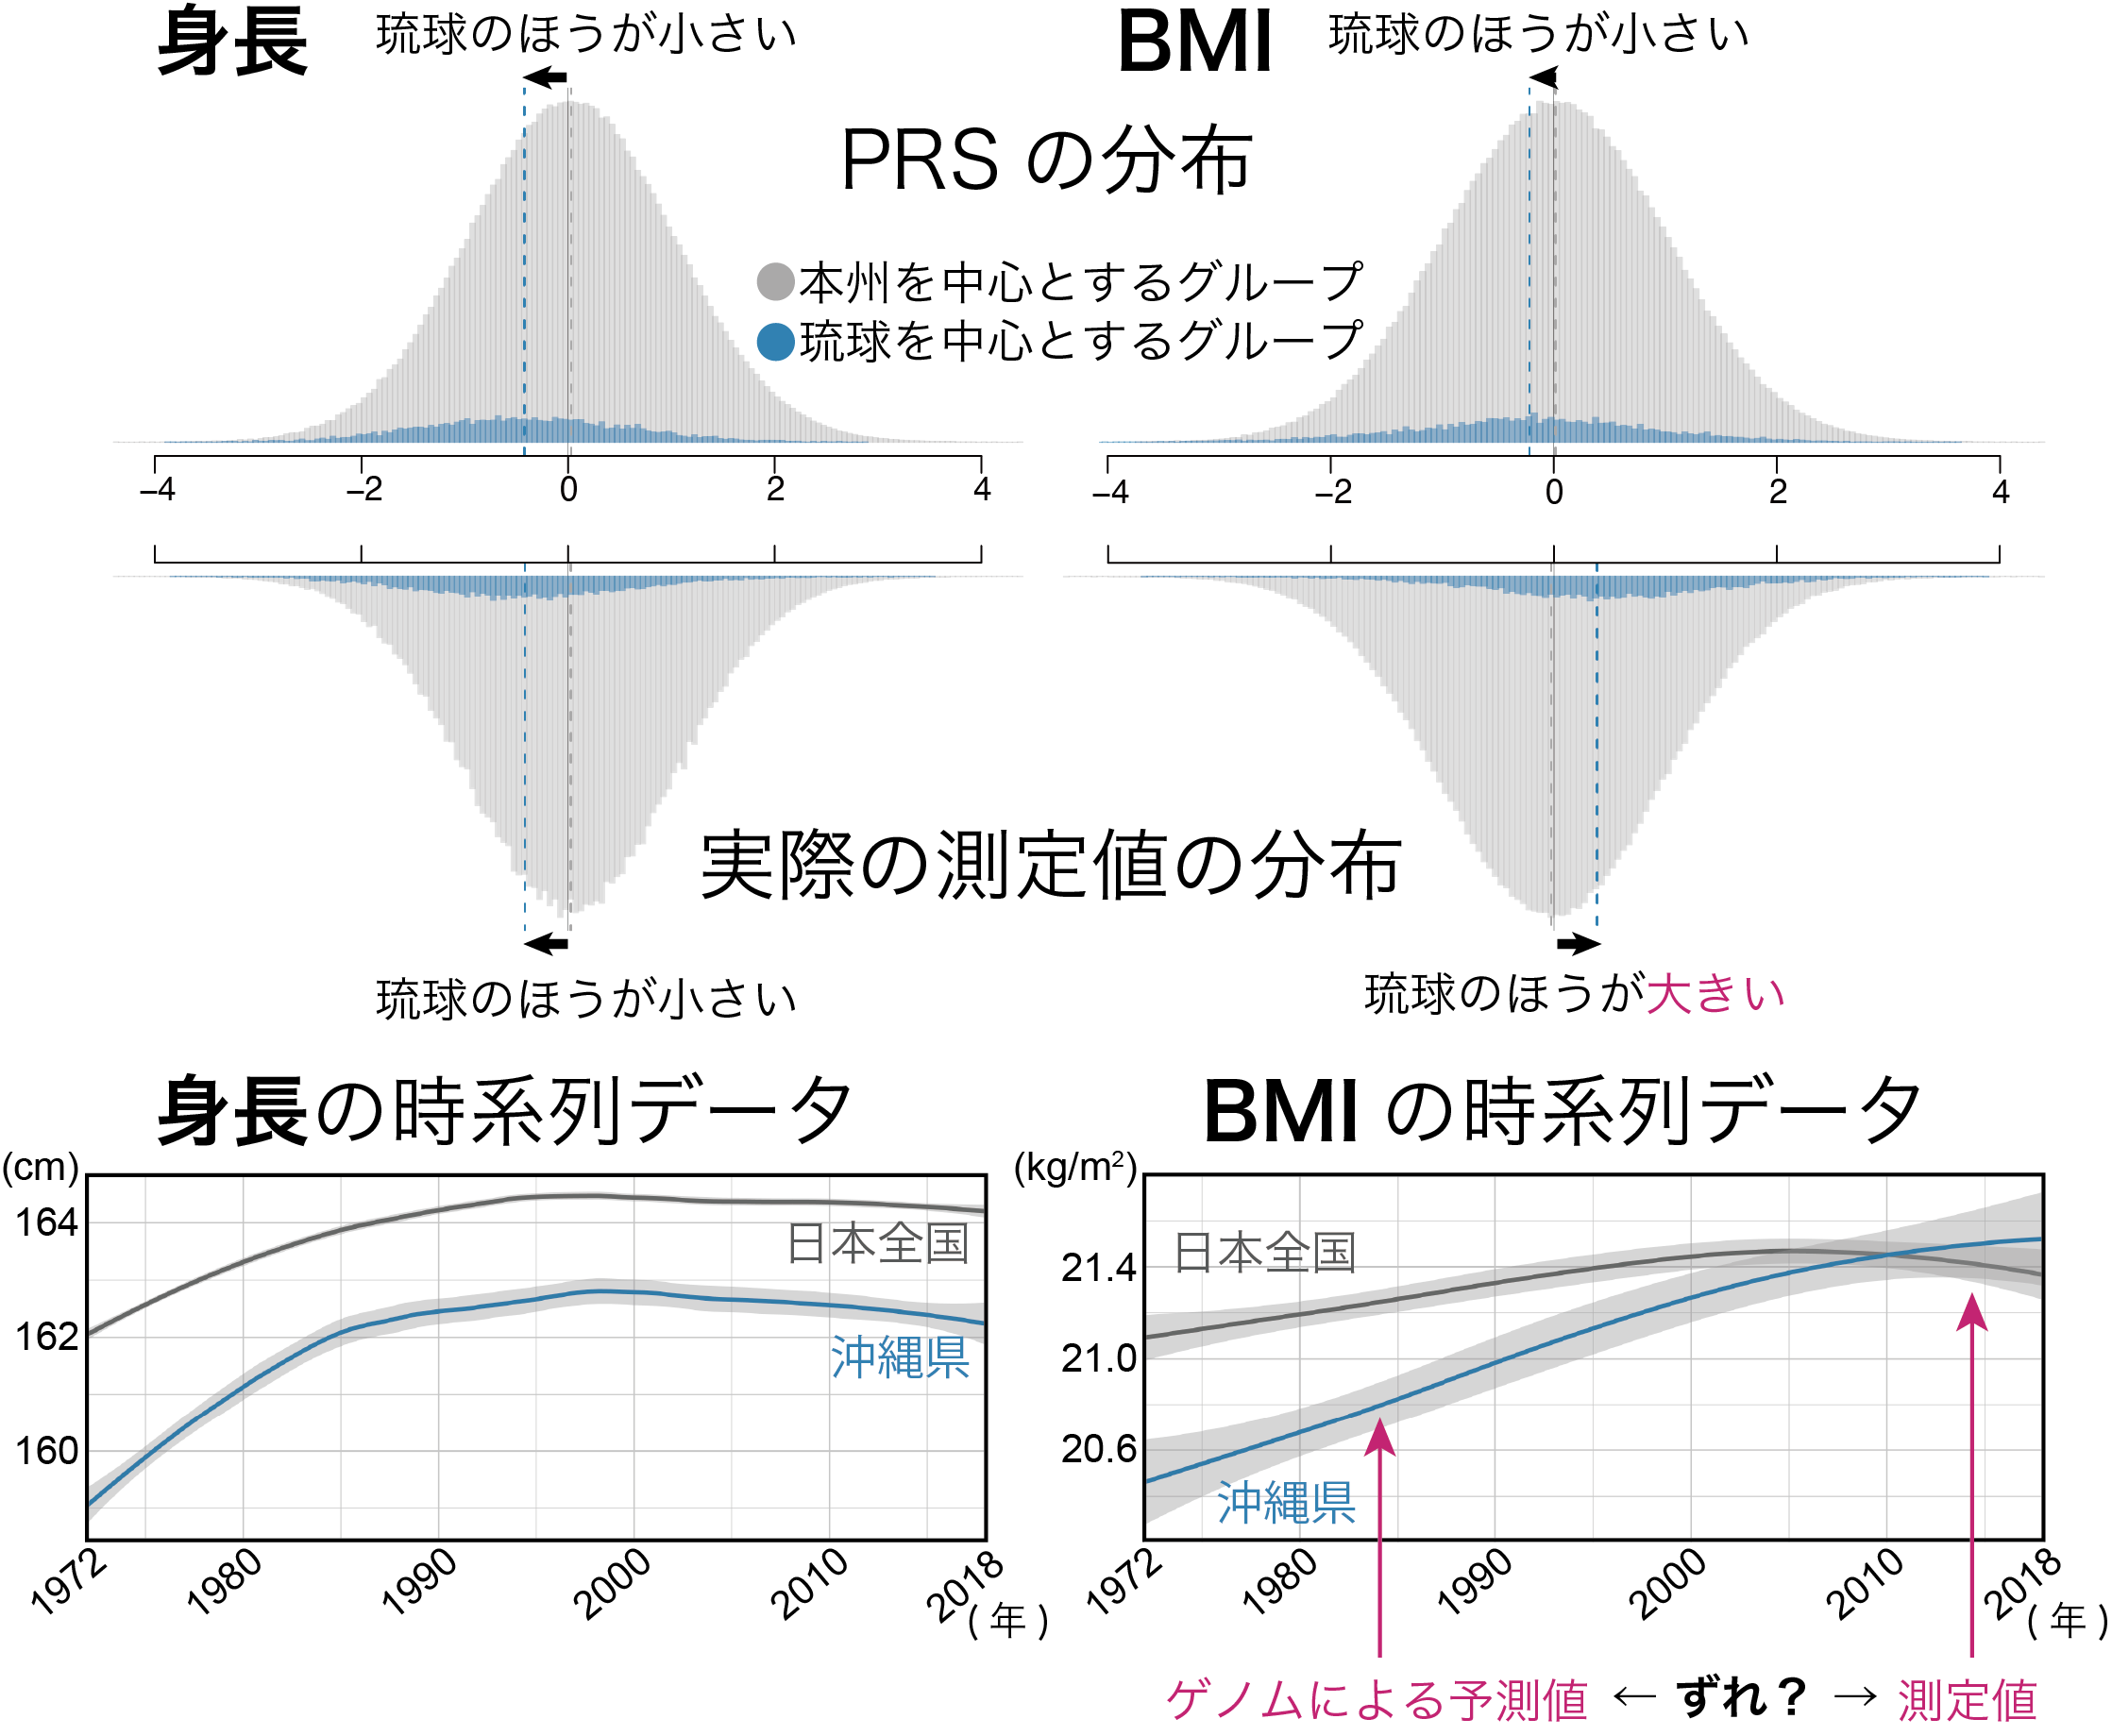 次元削減手法により定義した2つのグループによる身長・BMIのPRSと検査値自体の分布と、過去50年間の身長・BMIの平均値の時系列変化